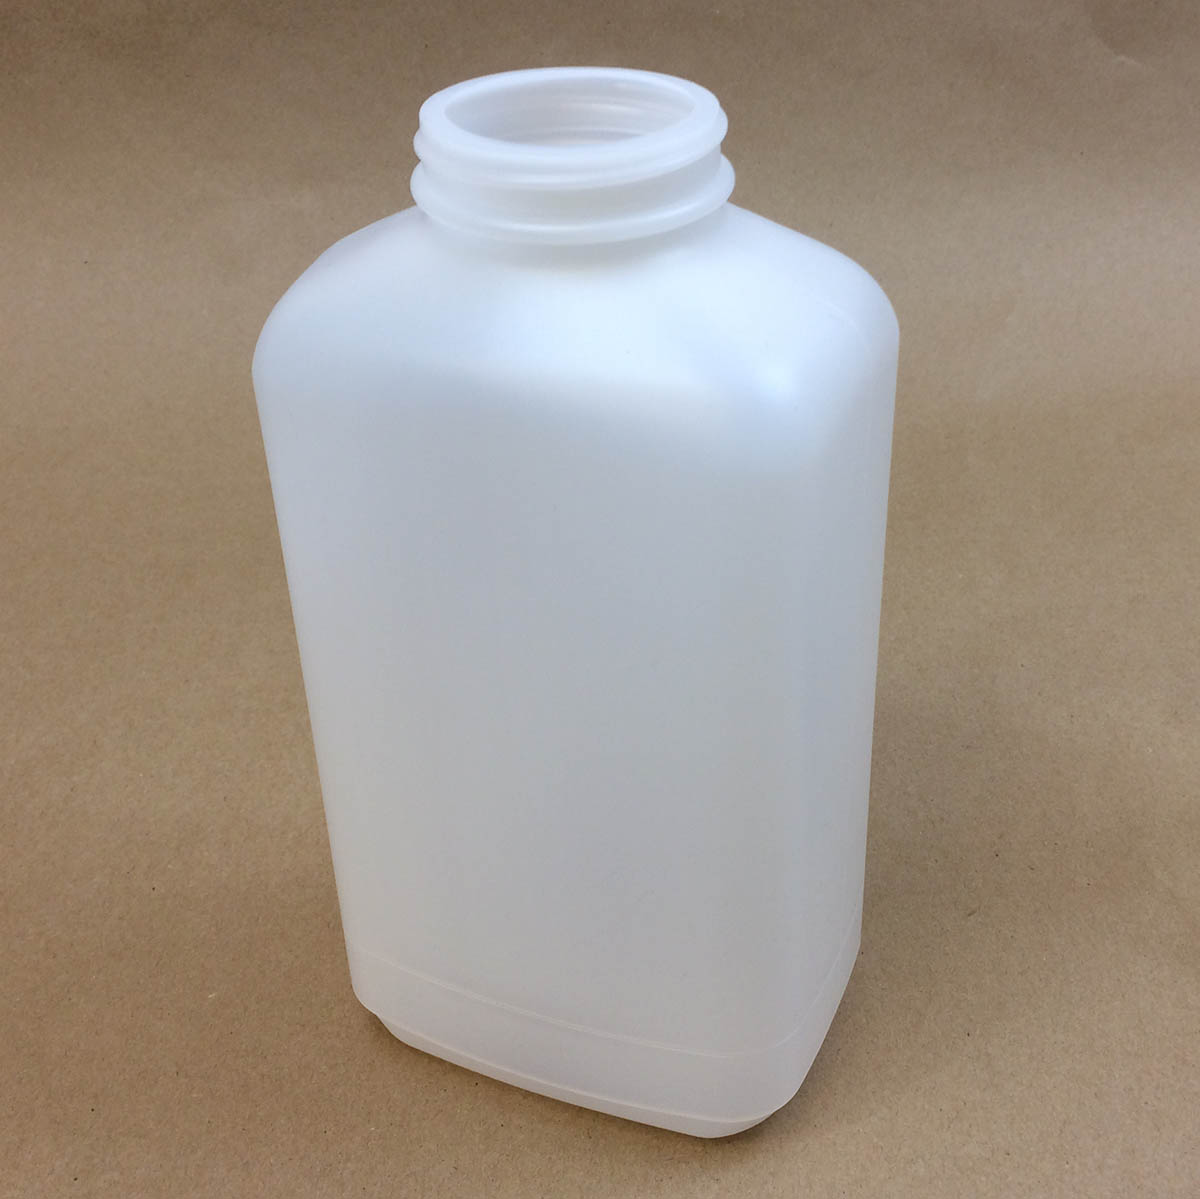  45 oz.   53400 Natural  Space Saver Oblong  Plastic   Jar